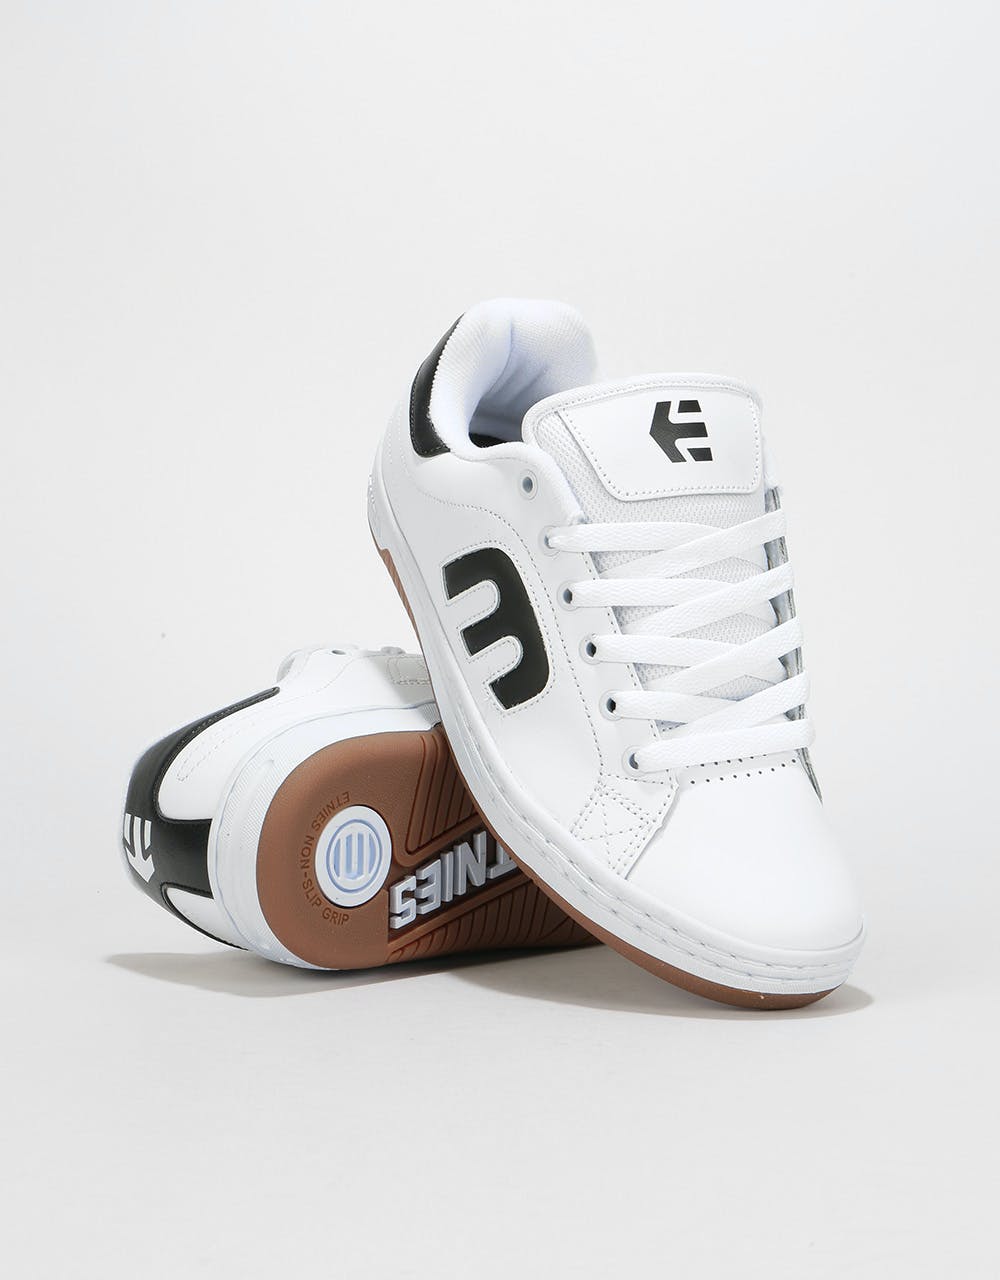 Etnies Calli-Cut Skate Shoes - White/Black/Gum